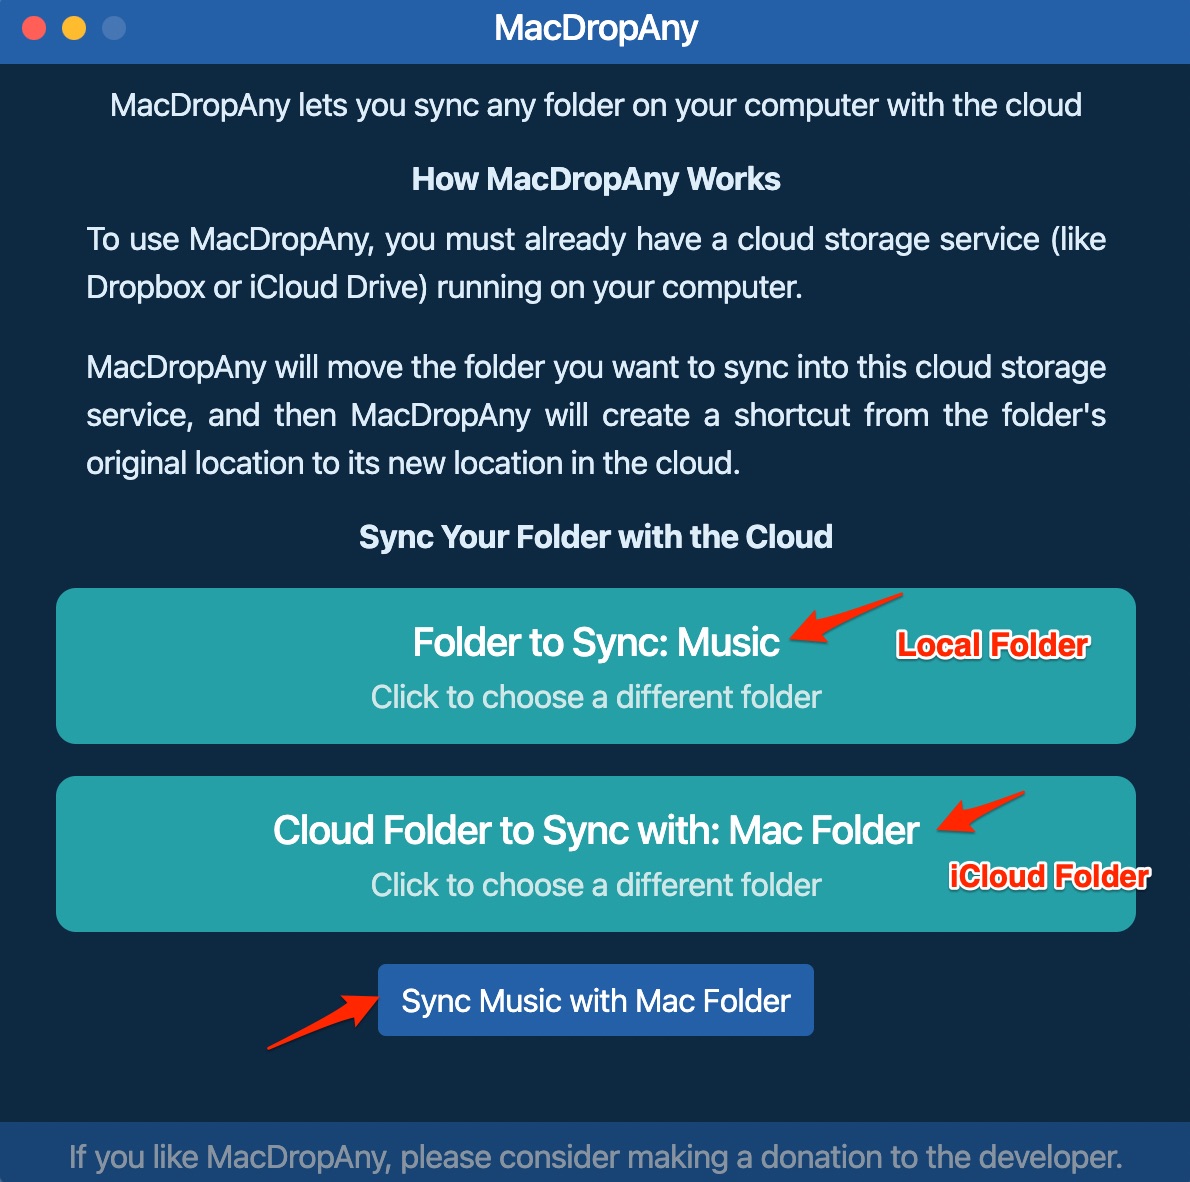 Sync Local Folder with Mac